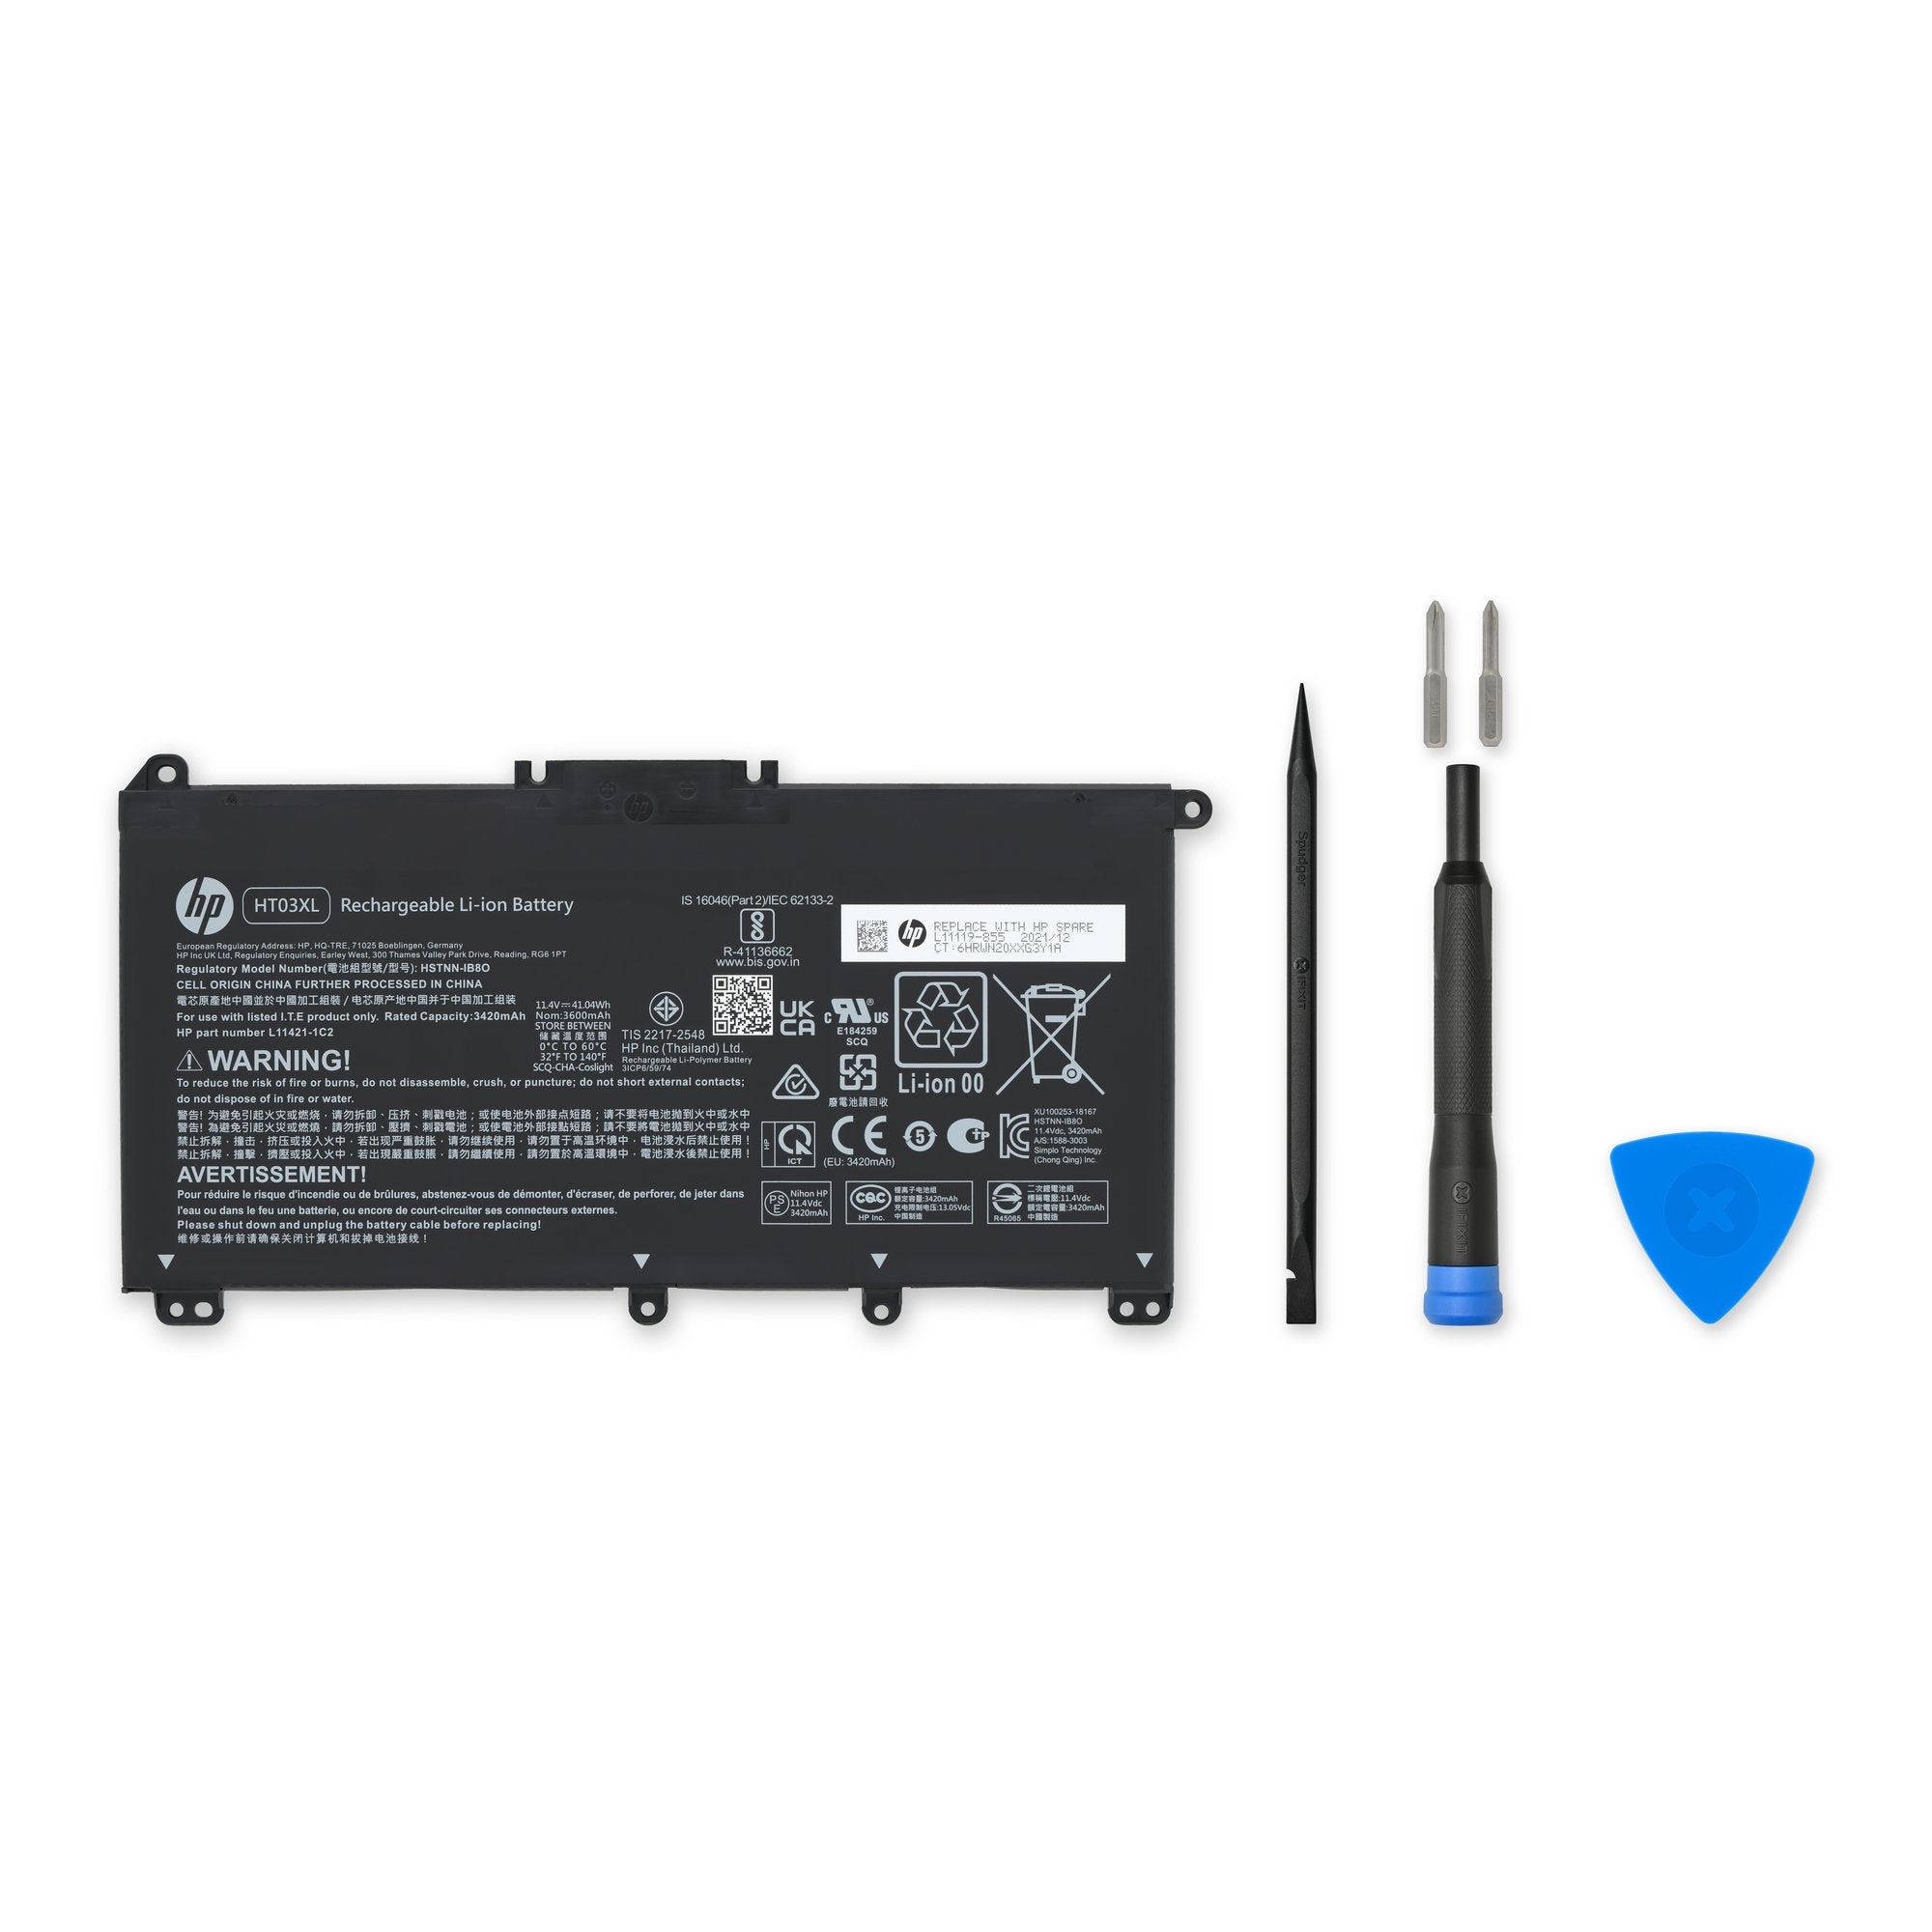 HP HT03XL Battery - Genuine New Fix Kit